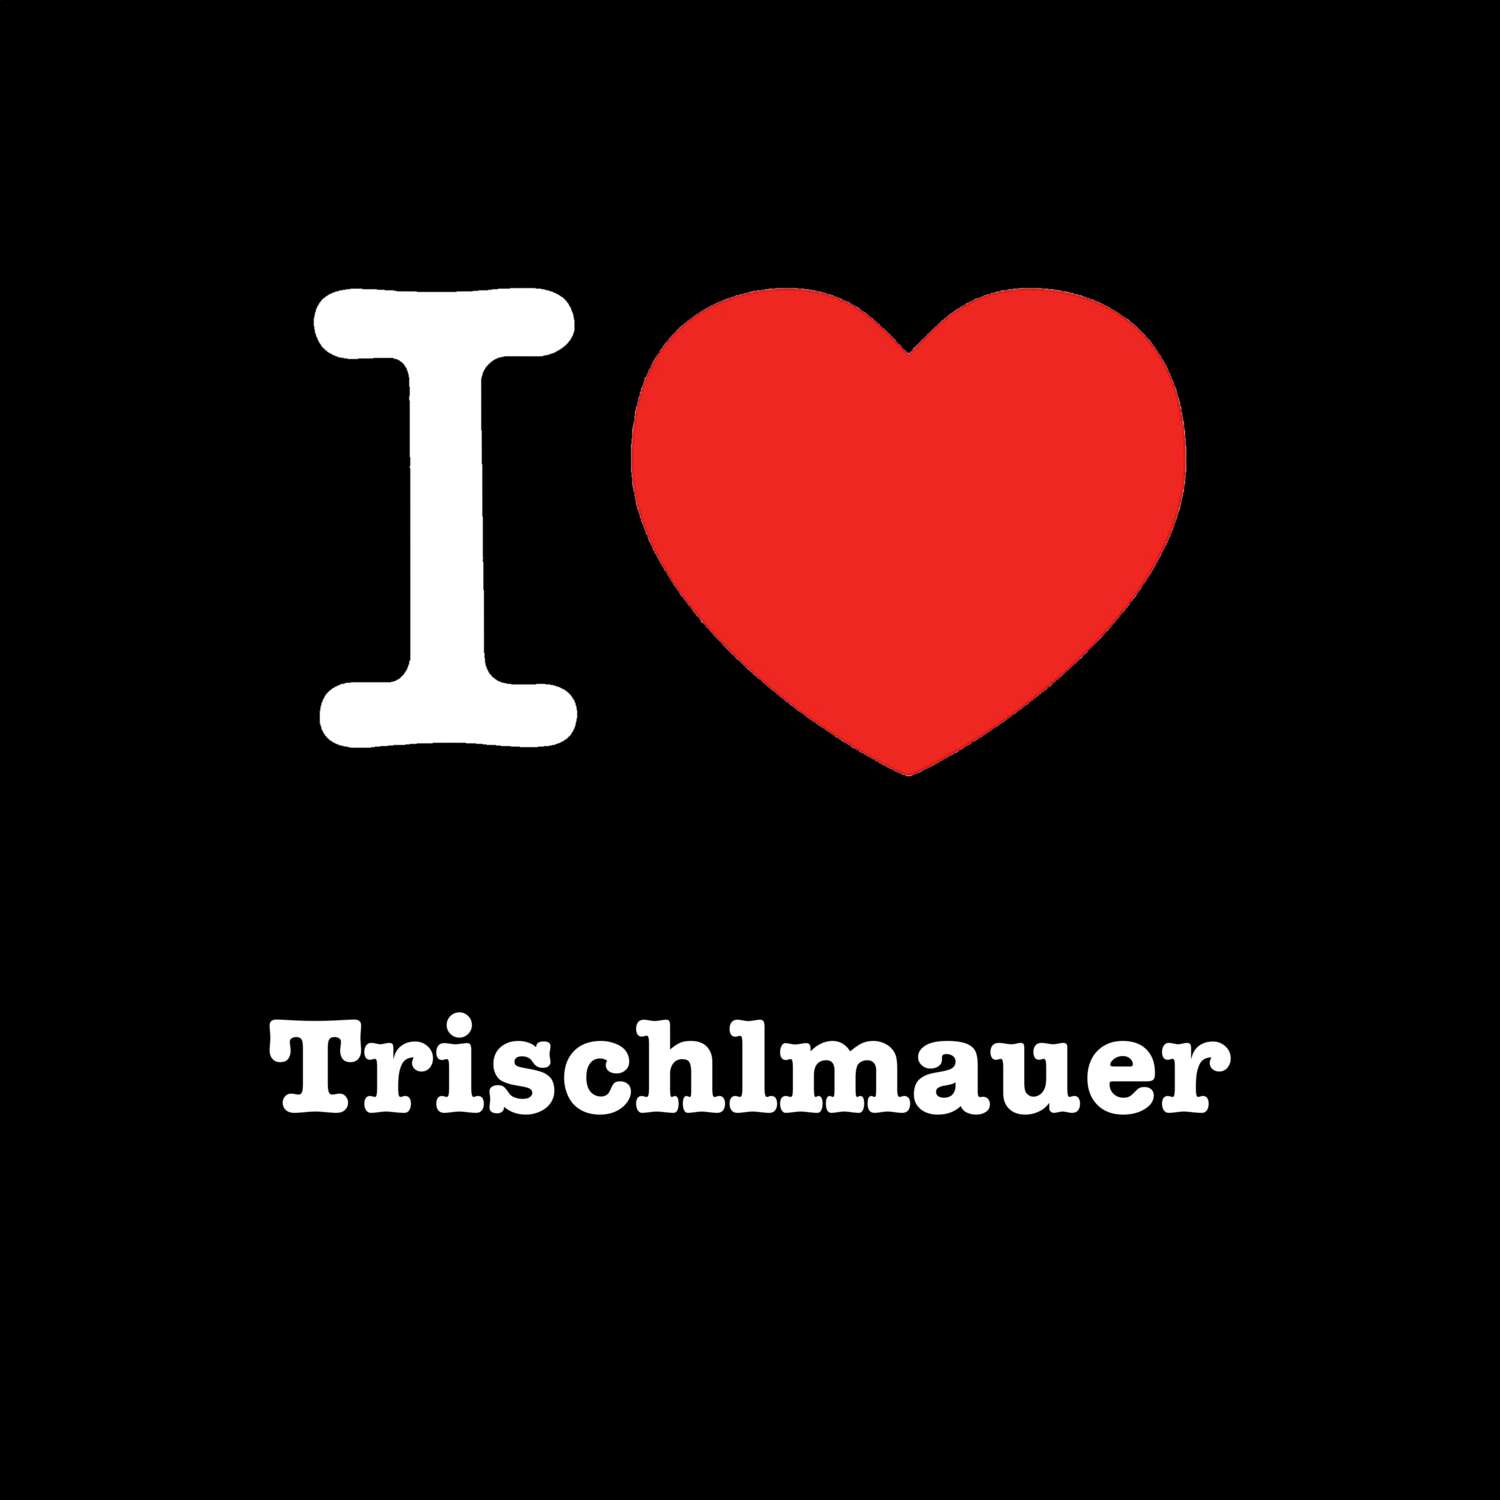 Trischlmauer T-Shirt »I love«